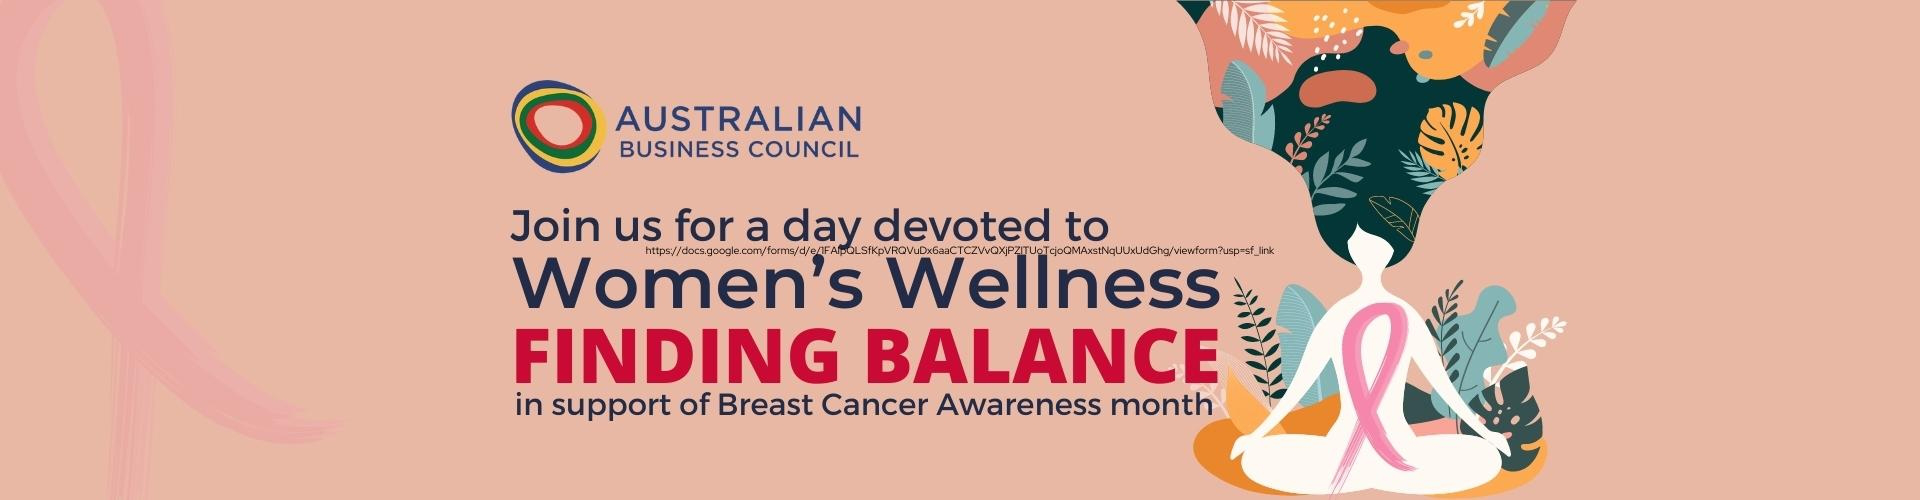 thumbnails Women & Wellness: FINDING BALANCE (Breast Cancer Awareness Month)